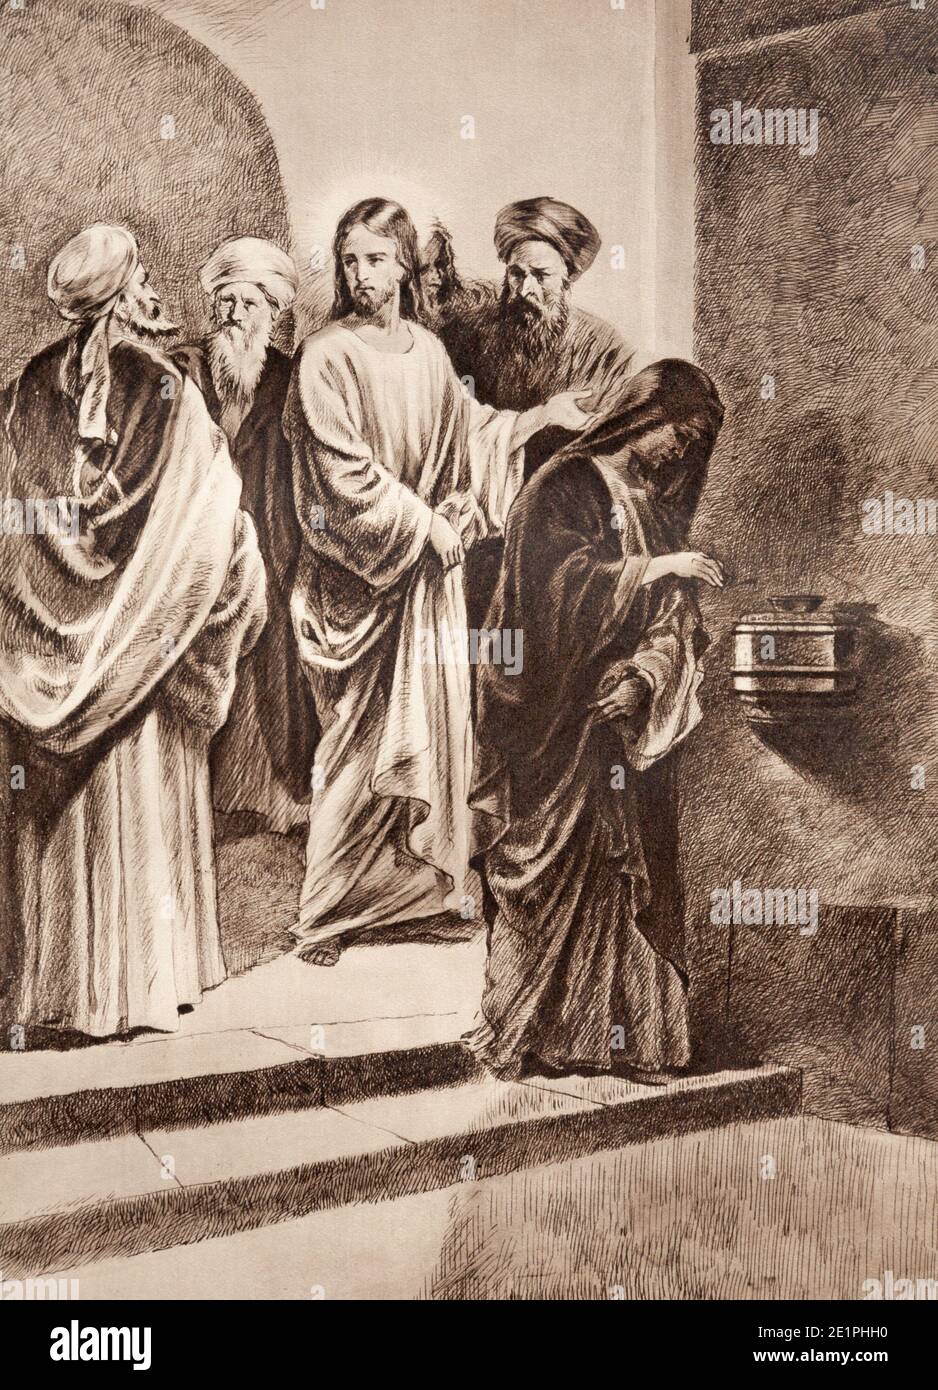 SEBECHLEBY, SLOWAKEI - 24. SEPTEMBER 2011: Die Lithographie Jesu beobachtet die Witwenmilbe ursprünglich von einem unbekannten Künstler. Stockfoto